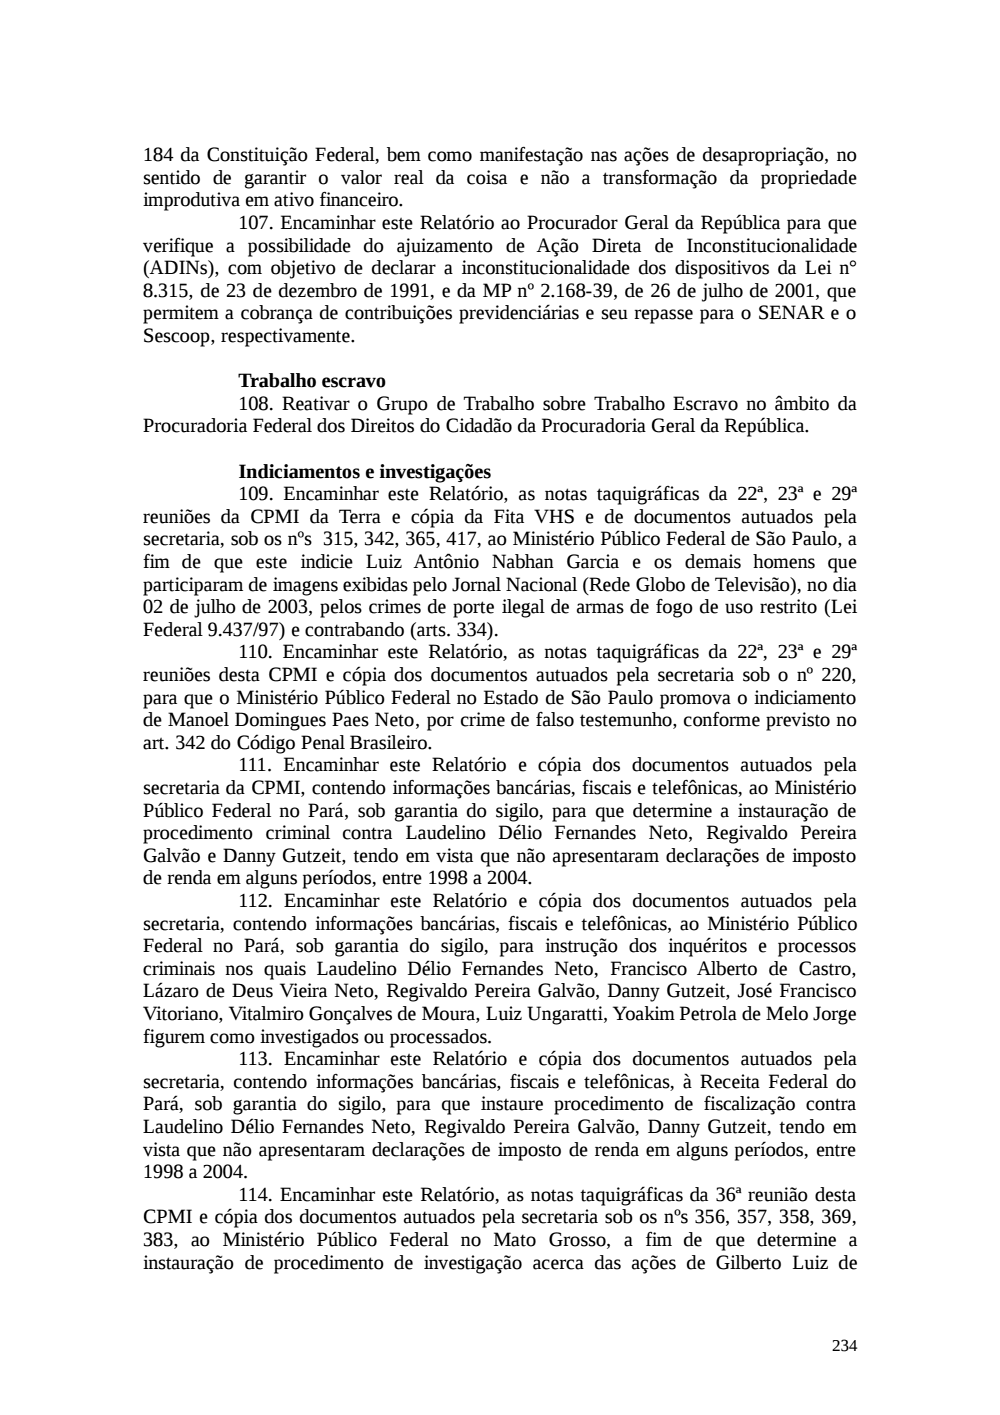 Page 234 from Relatório final da comissão